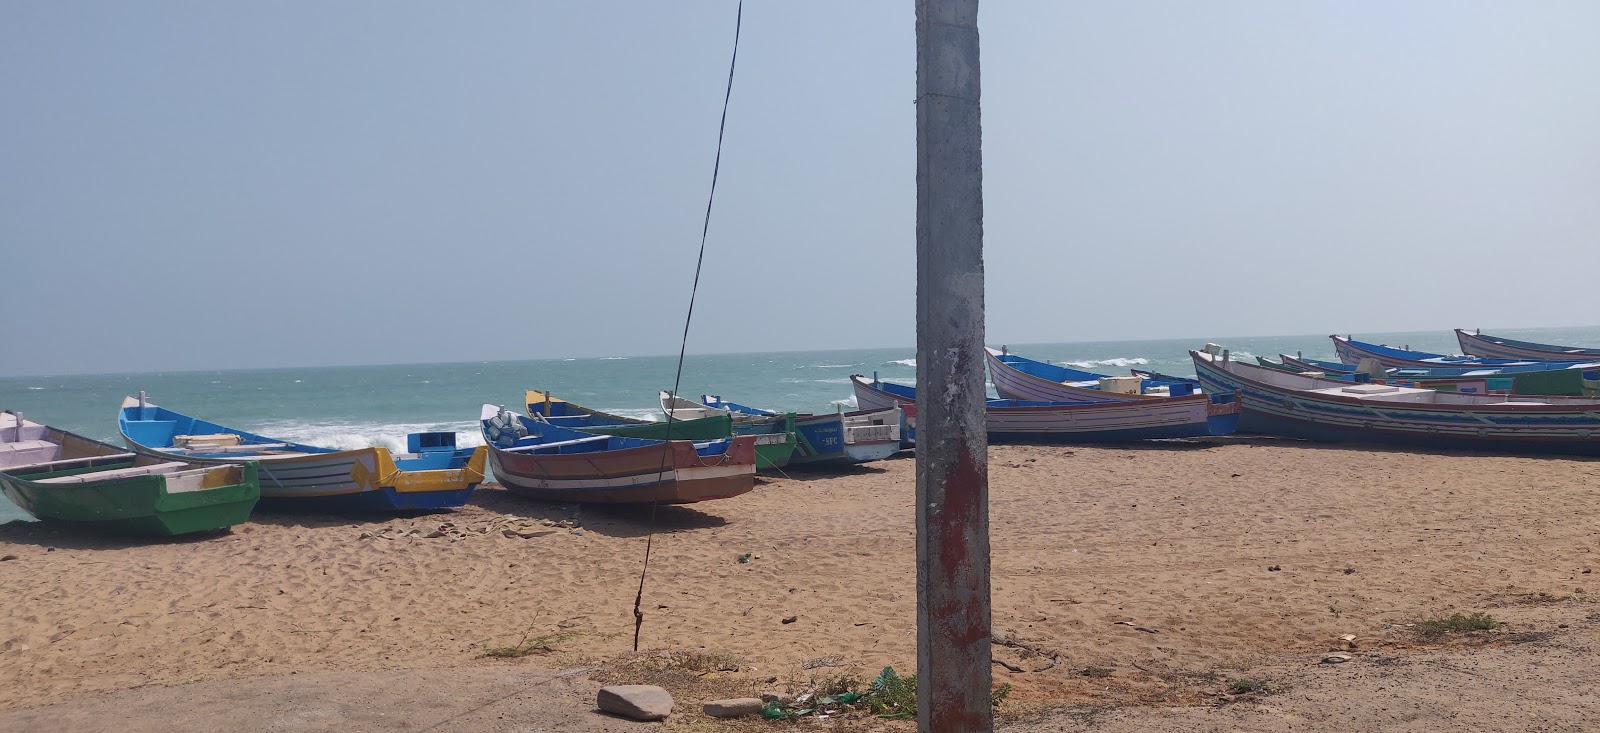 Thomaiyarpuram Beach'in fotoğrafı geniş plaj ile birlikte